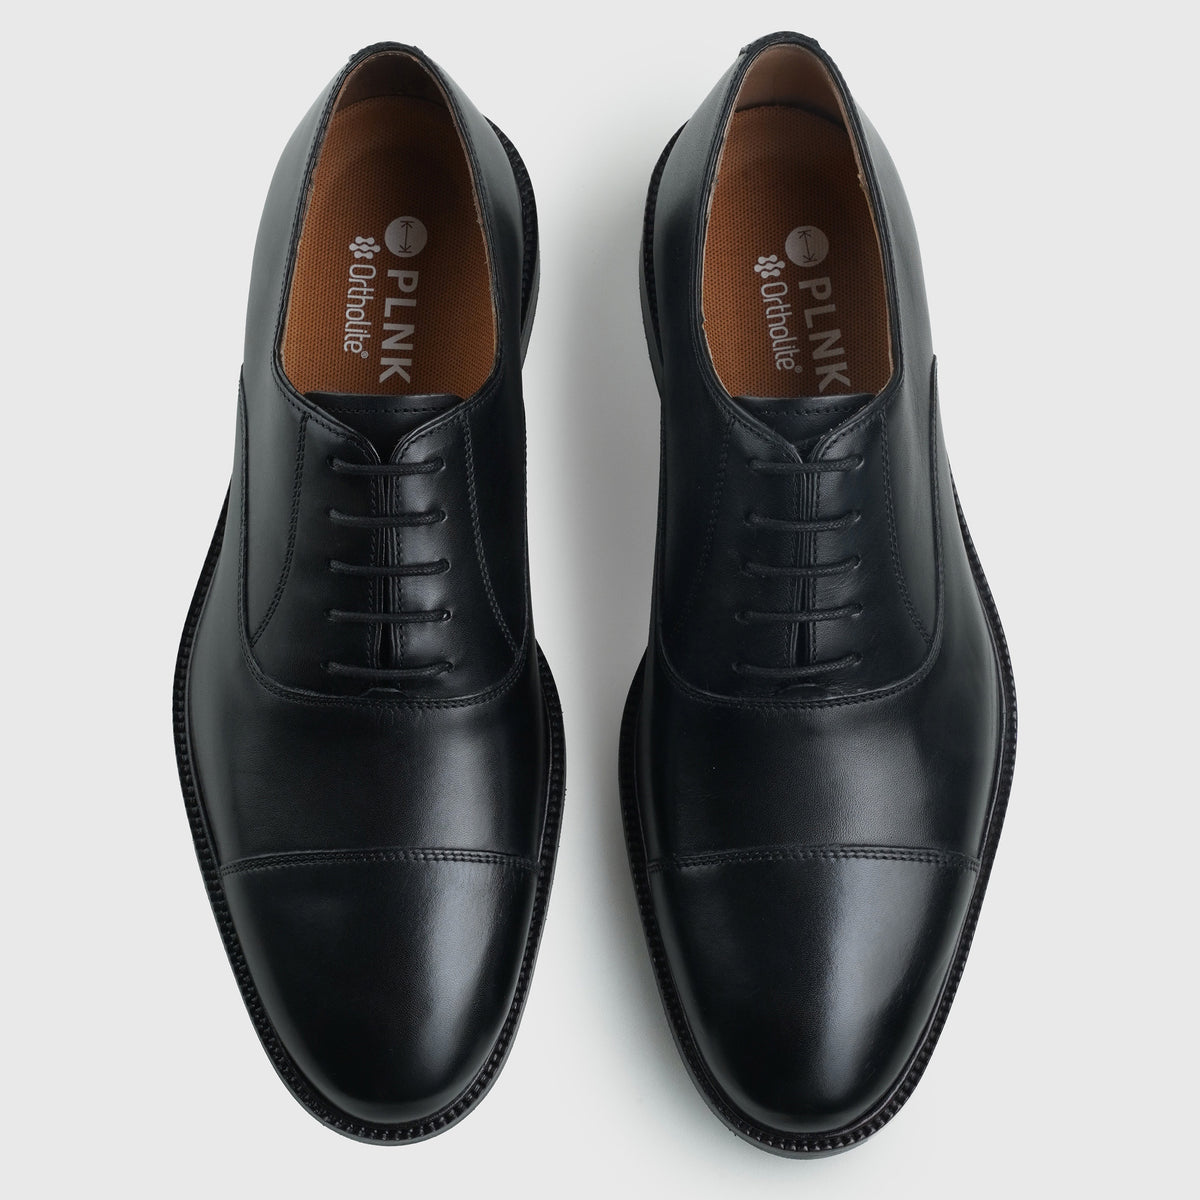 Captoe Oxfords Black 6187 - PLNK Shoes